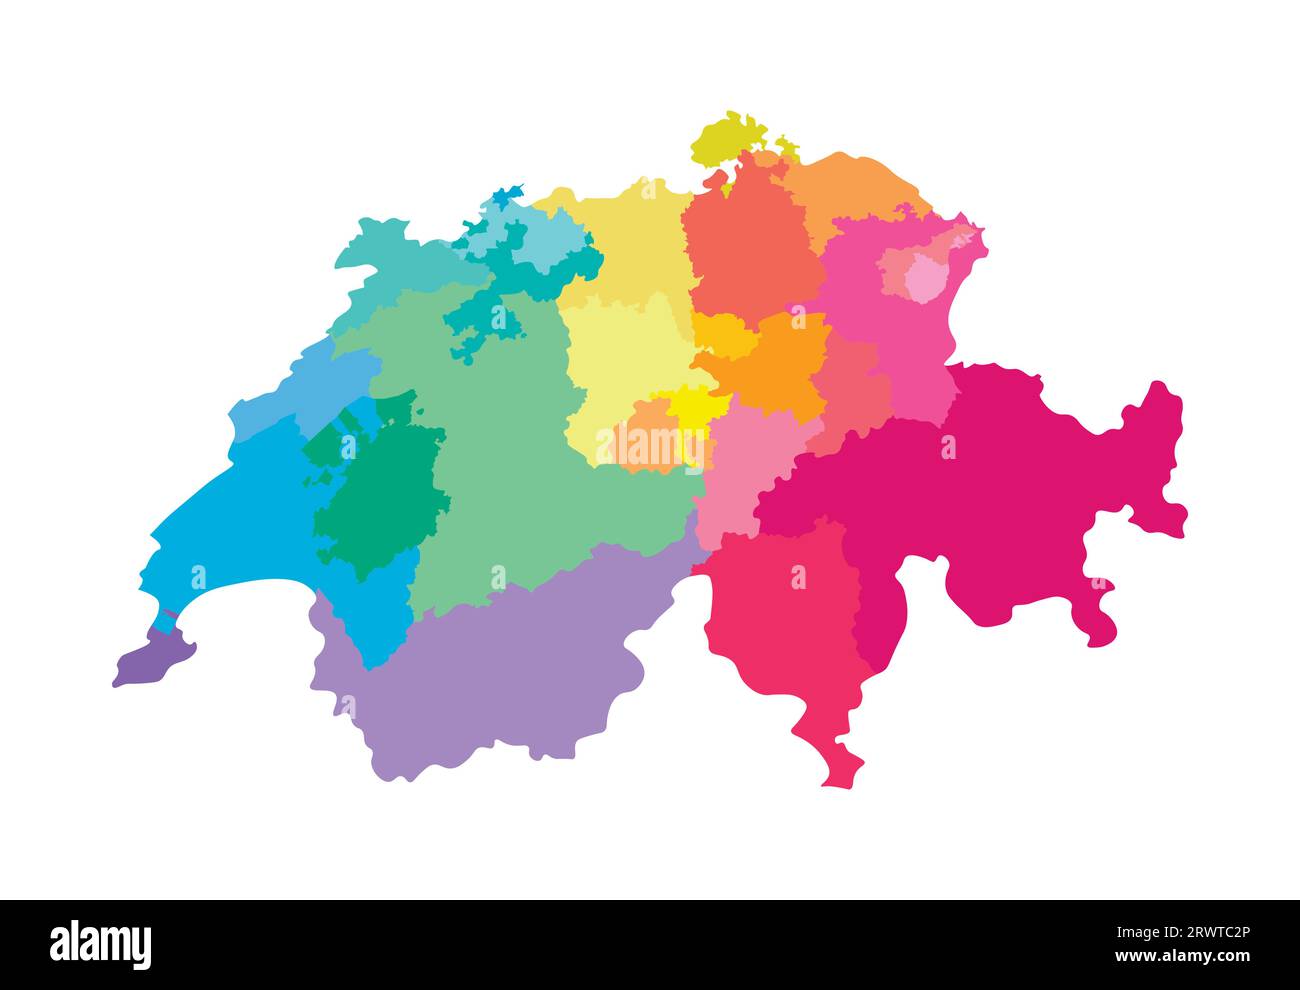 Vektorisolierte Darstellung einer vereinfachten Verwaltungskarte der Schweiz. Grenzen der Regionen. Mehrfarbige Silhouetten. Stock Vektor